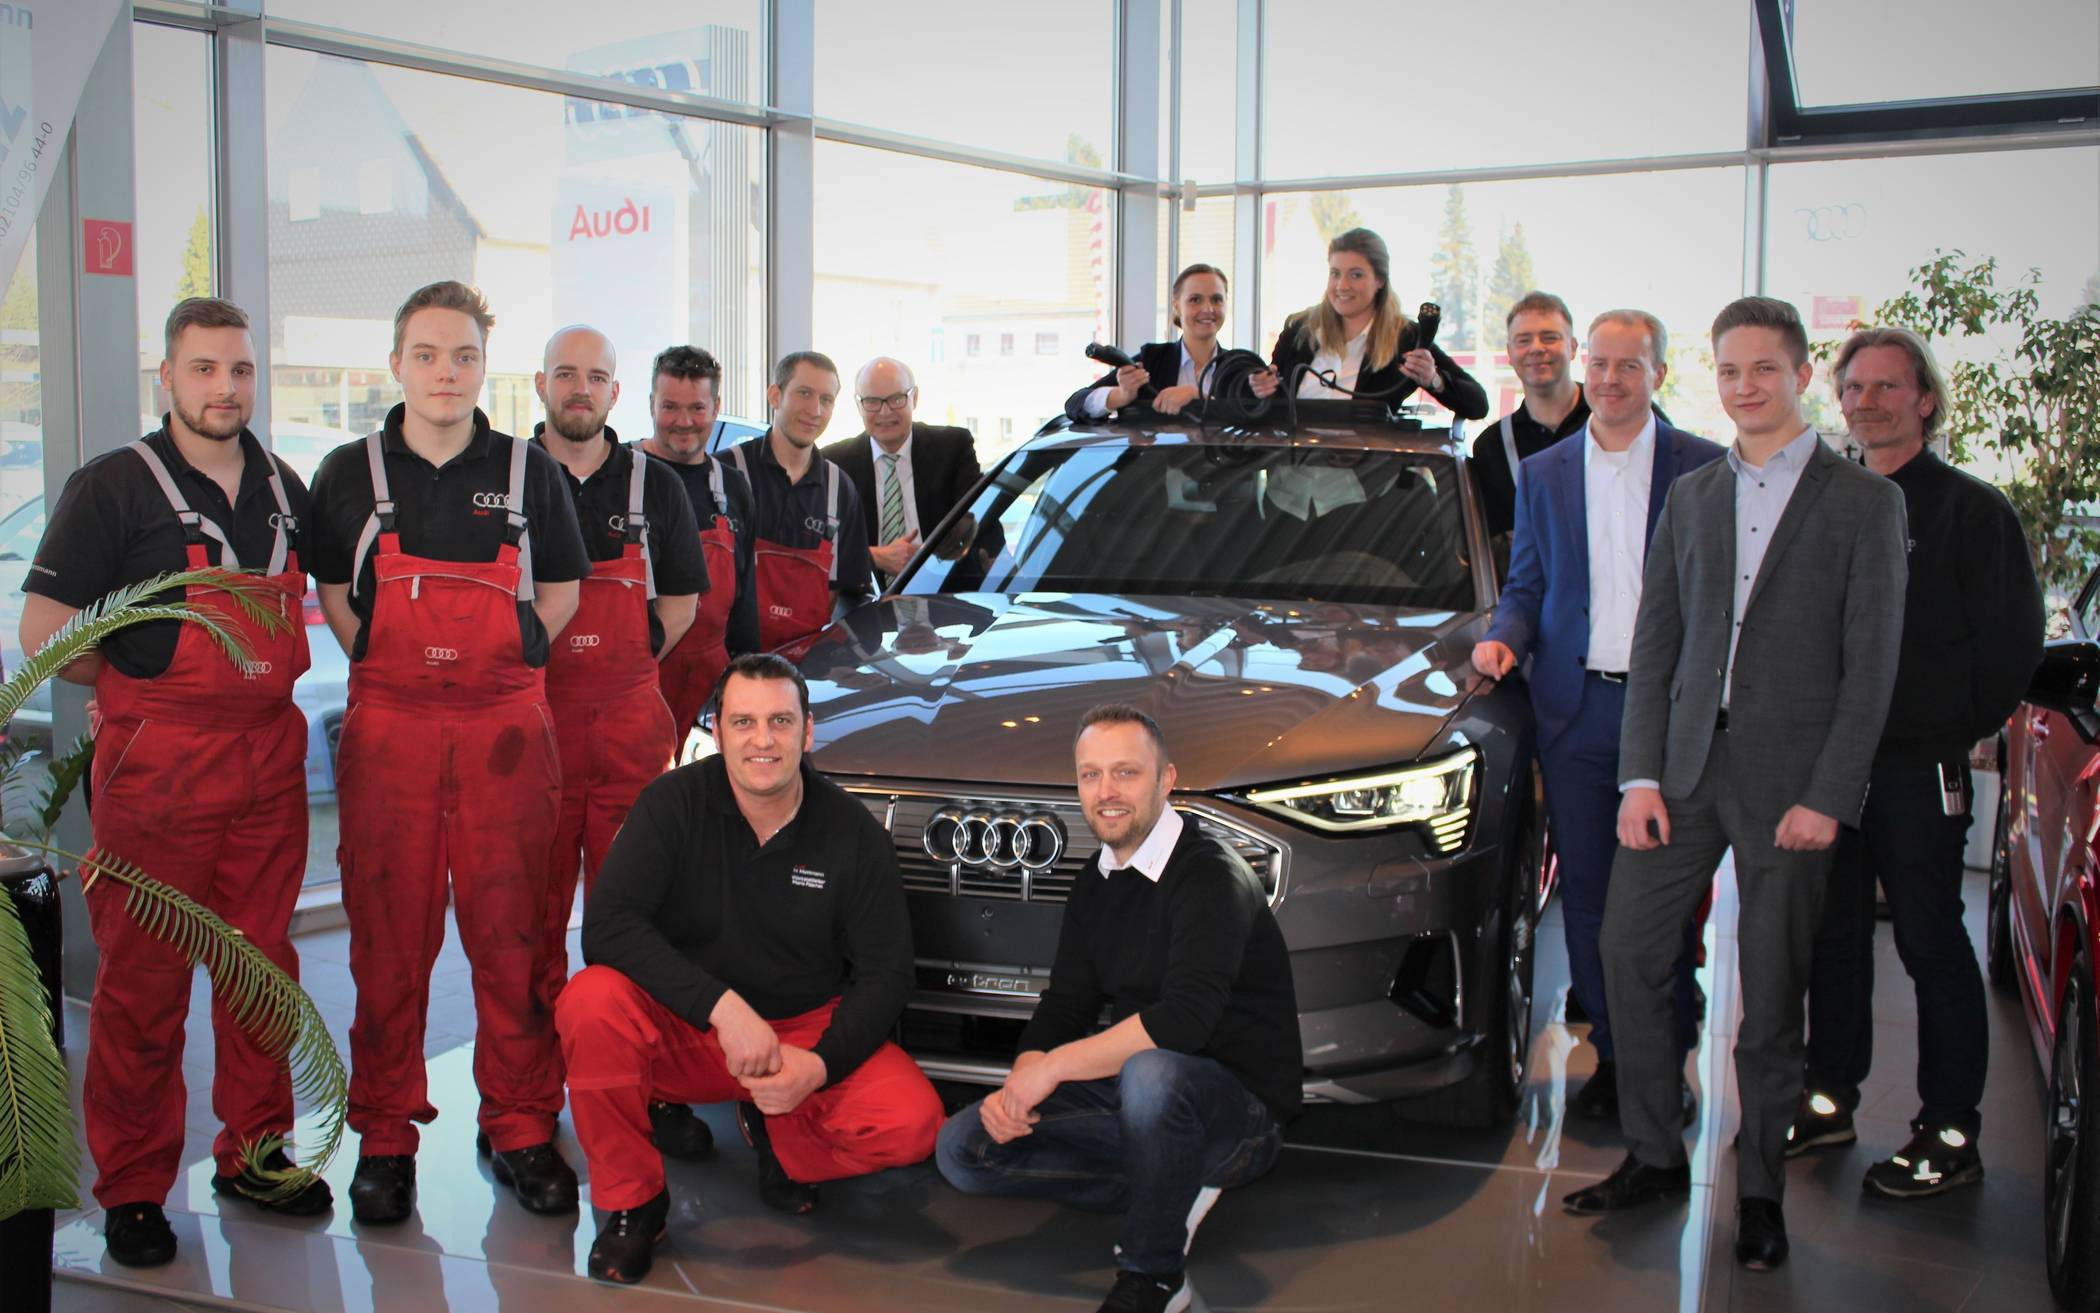  Das Team von Audi Gottfried Schultz in Mettmann präsentiert den neuen e-tron. 